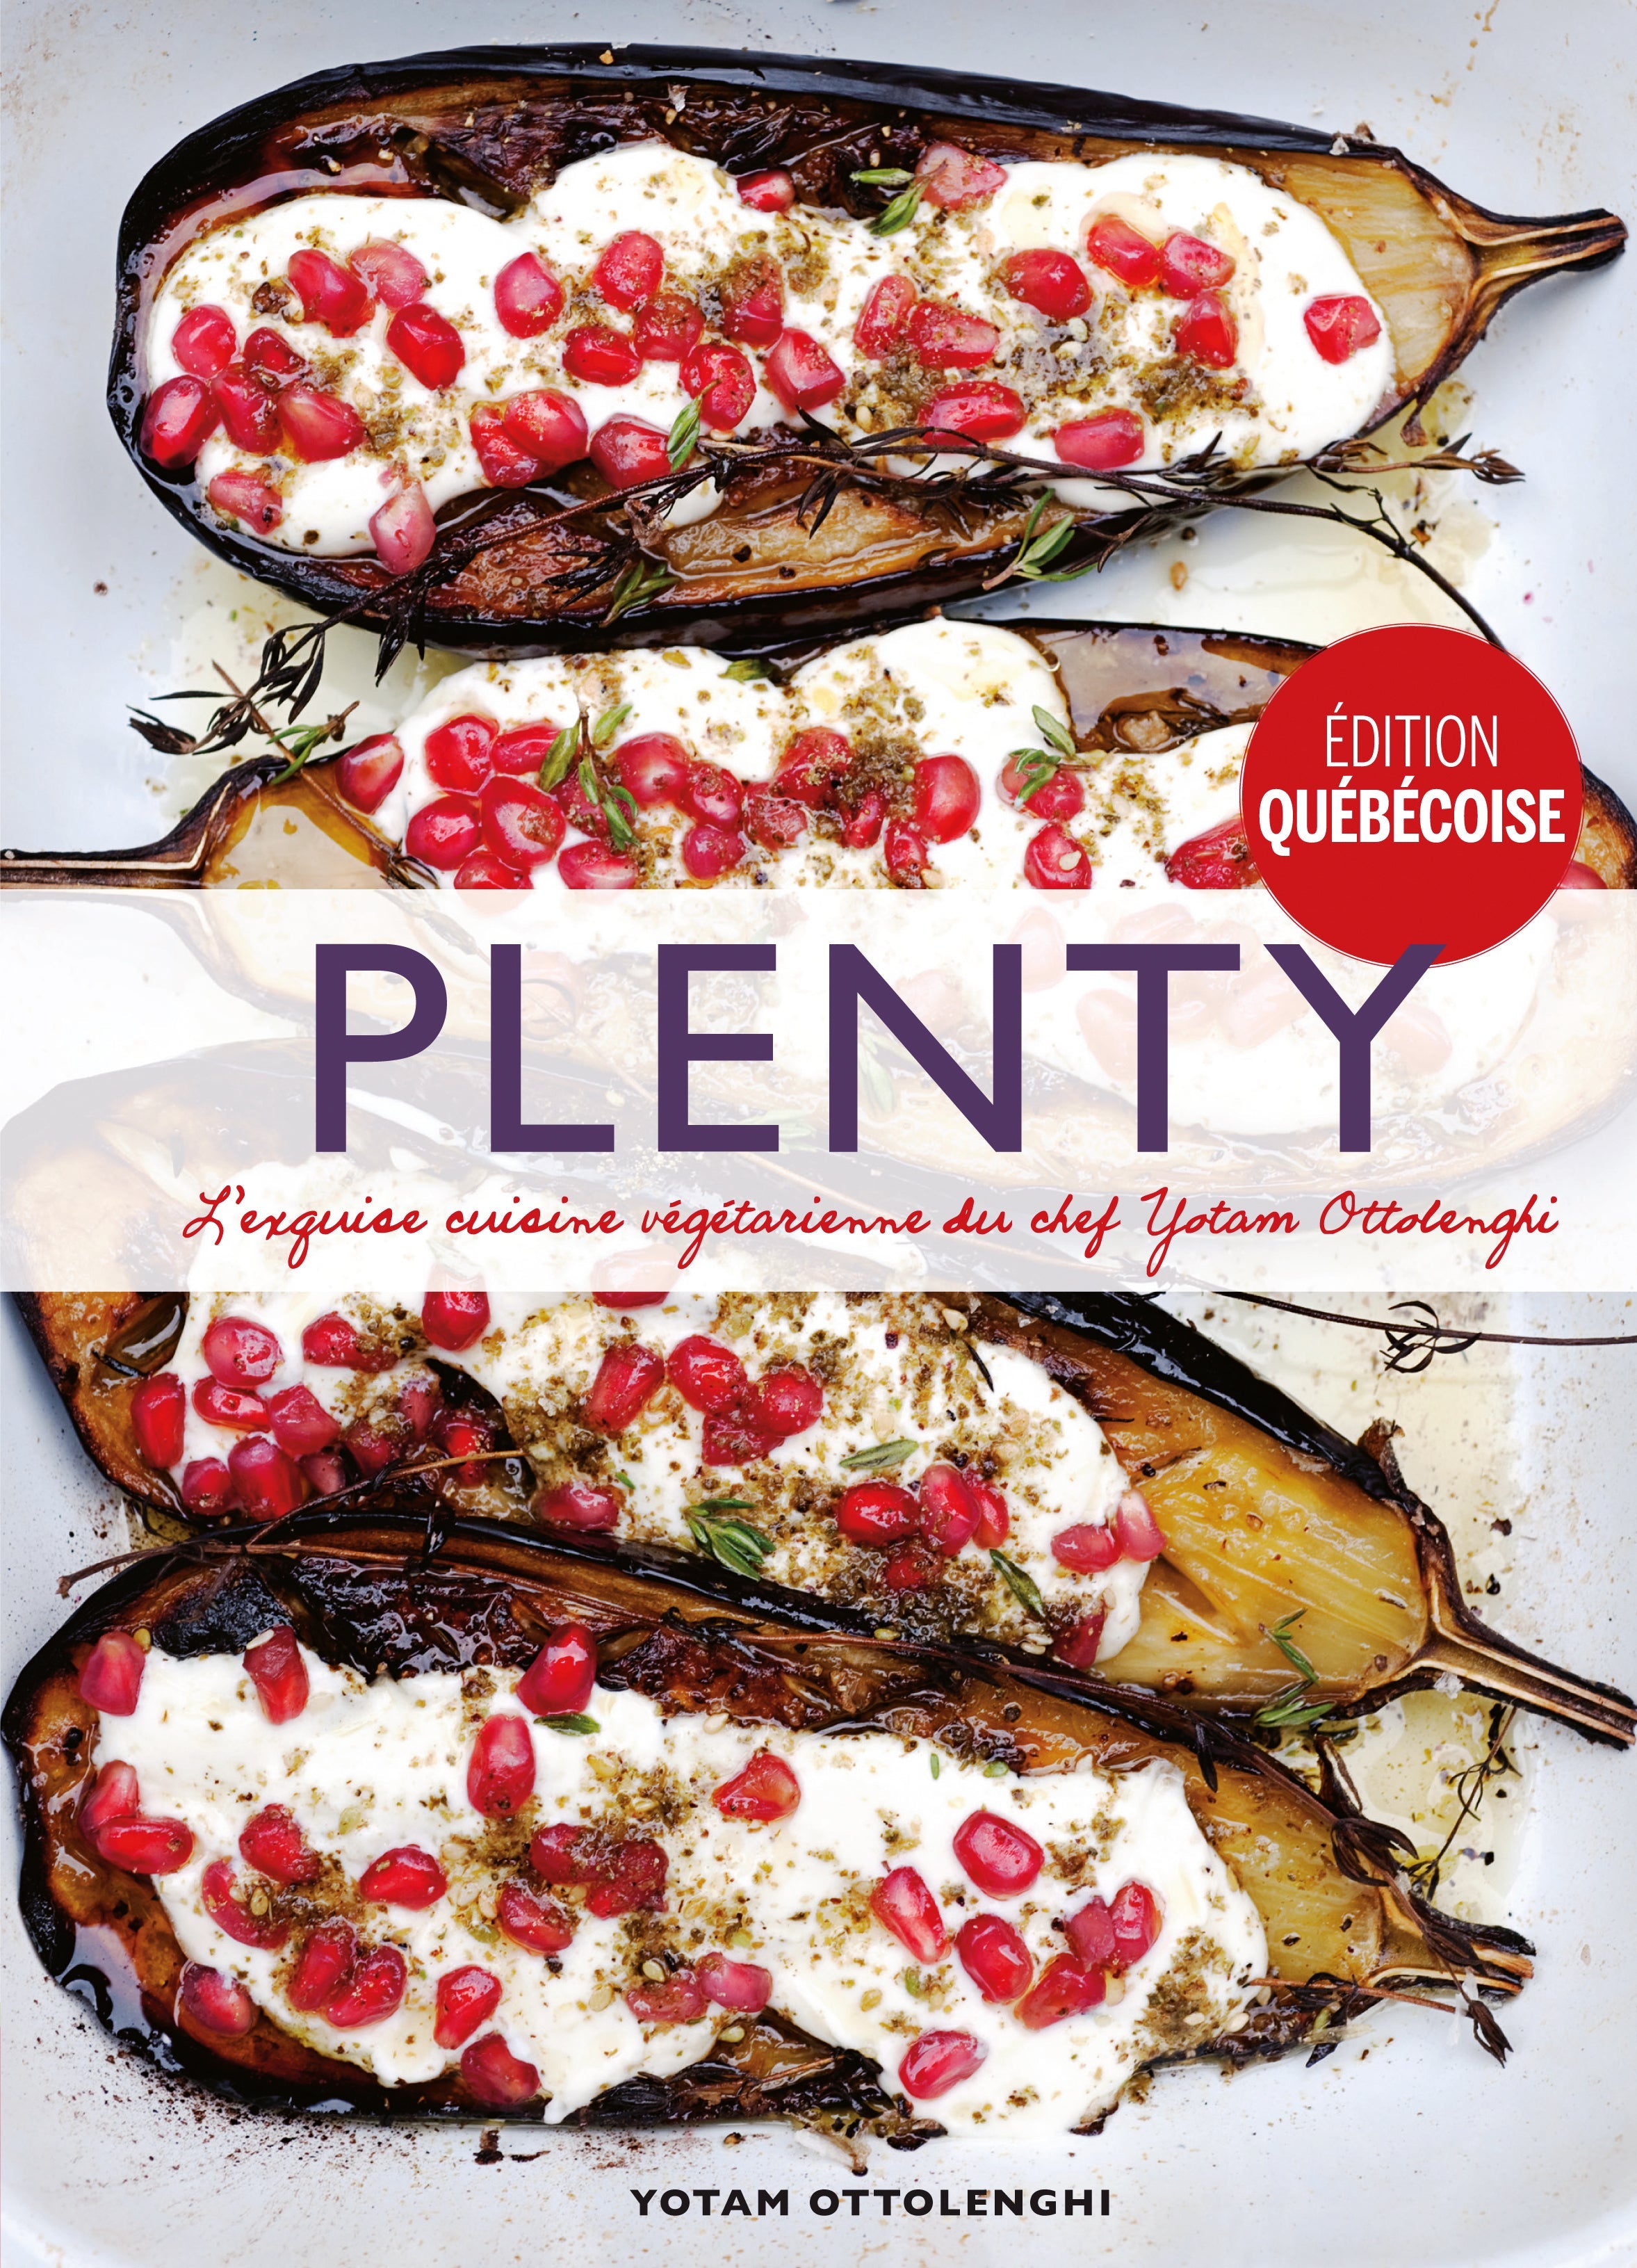 Plenty. 120 recettes végétariennes - Yotam Ottolenghi